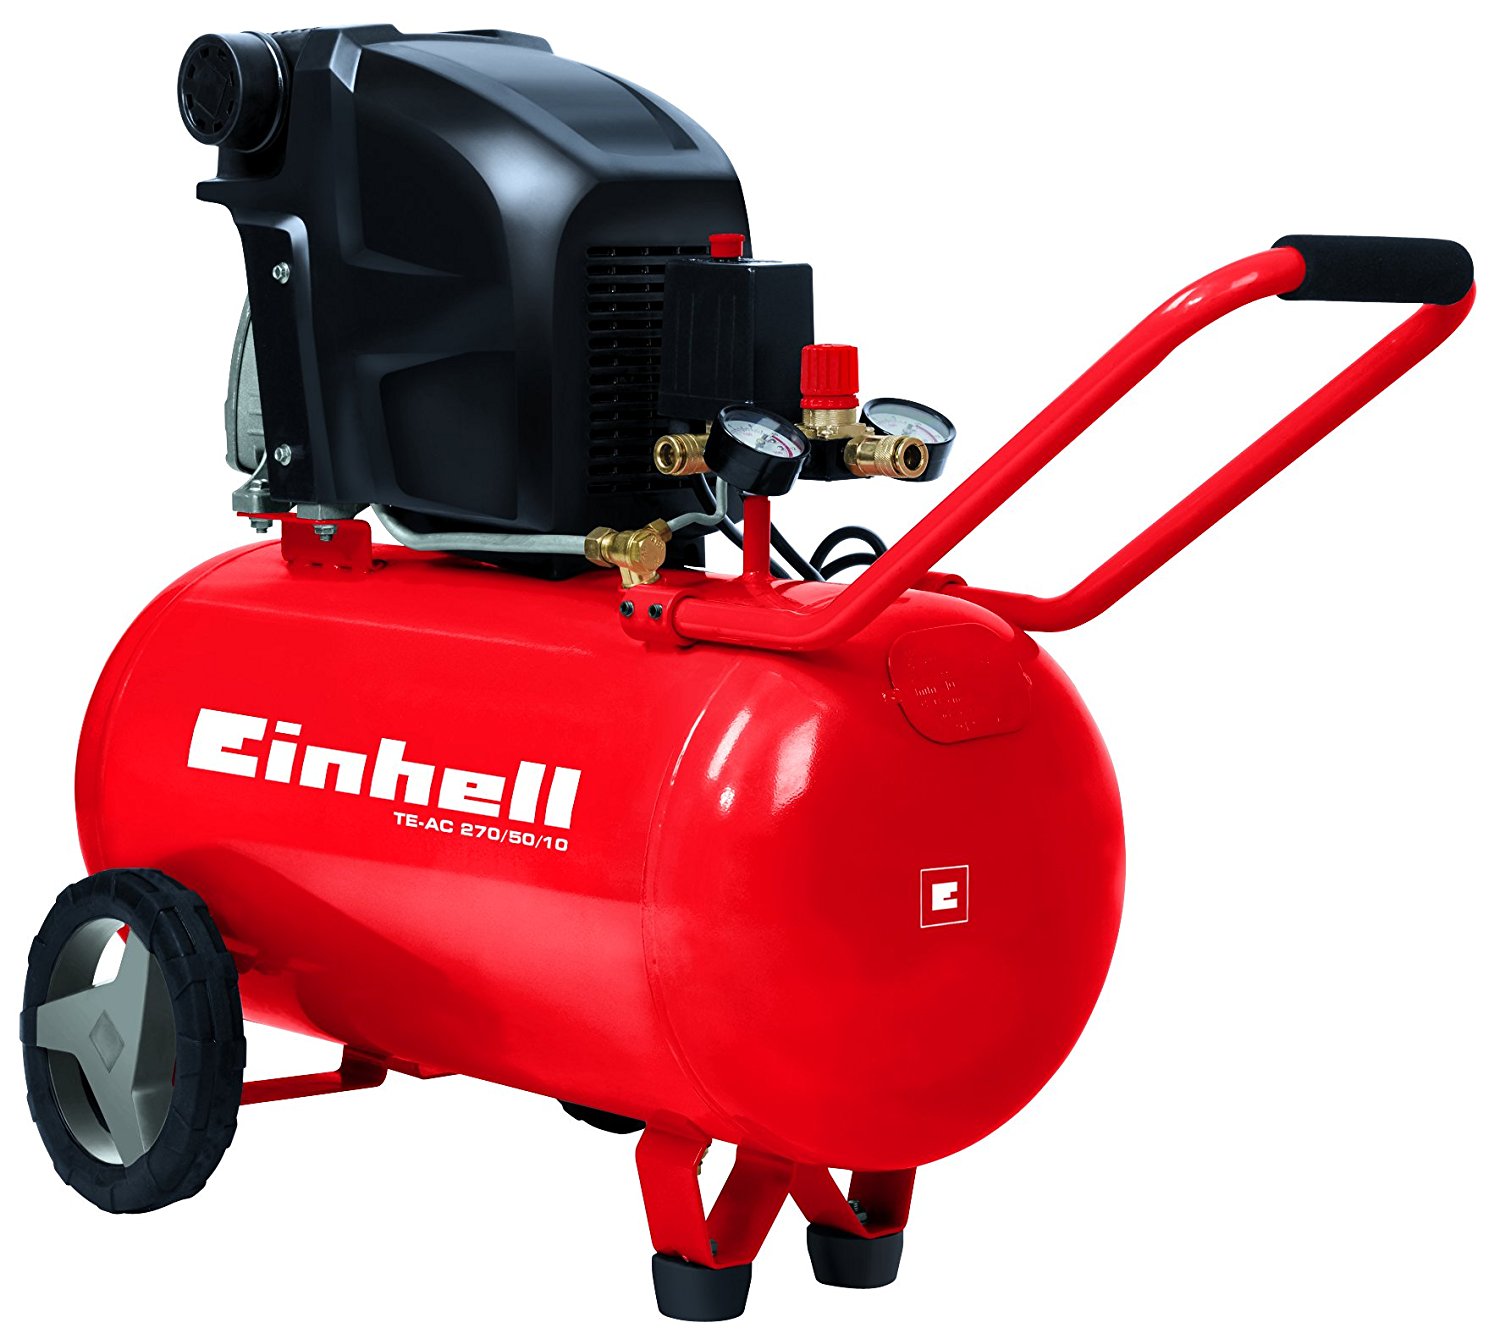 Einhell Kompressor TE-AC 270/50/10 (1,8 kW, 50 L, Ansaugleistung 270 ...